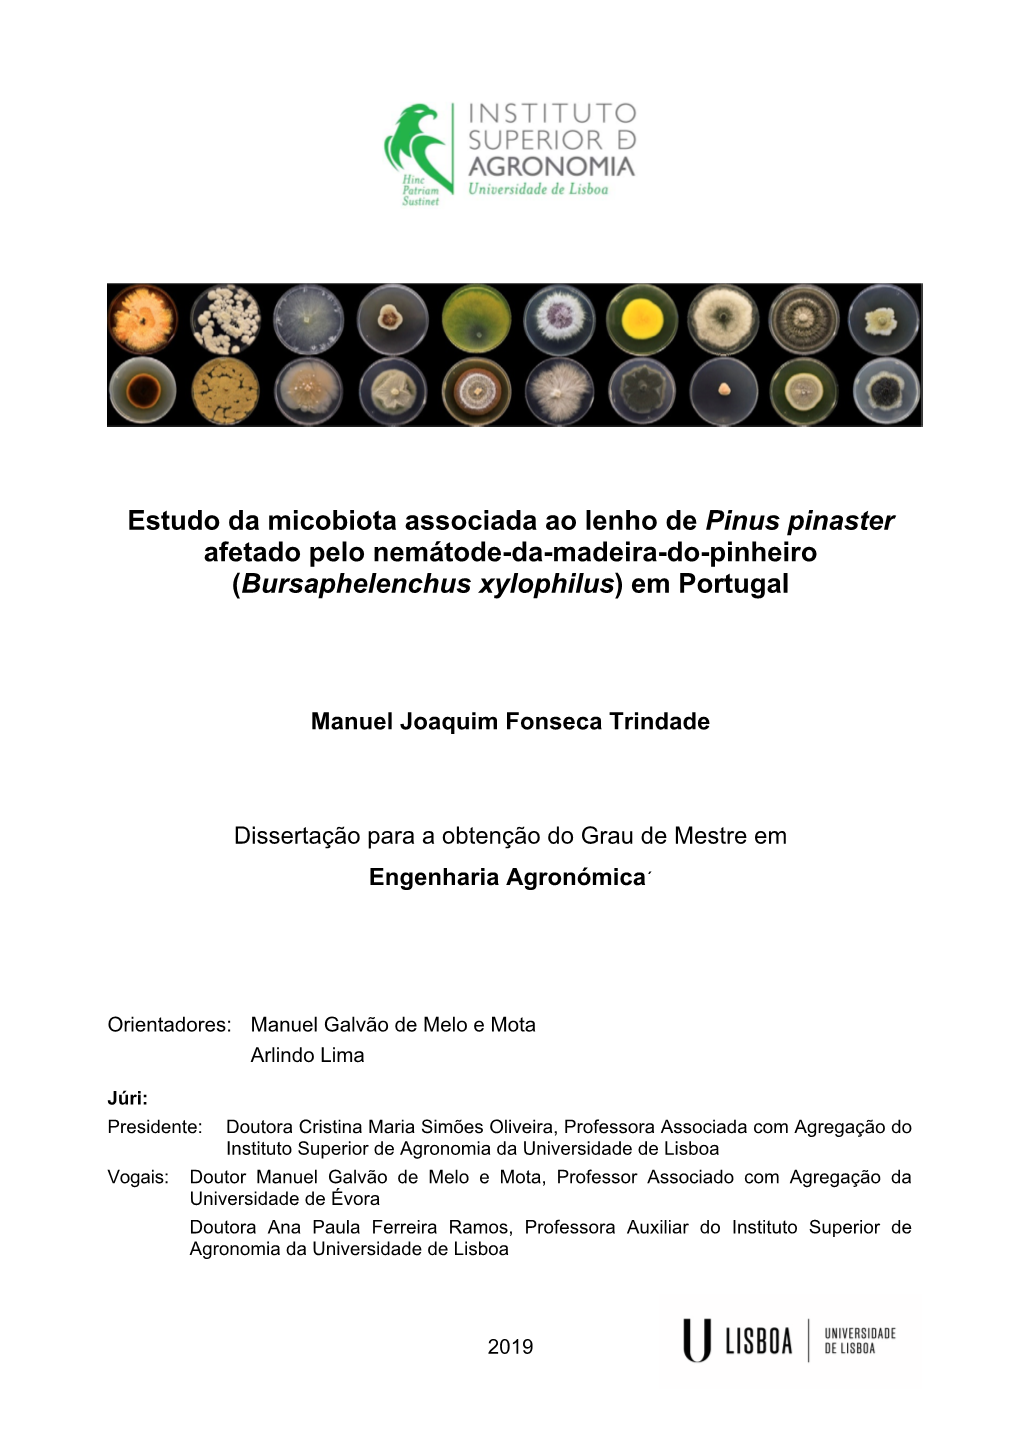 Estudo Da Micobiota Associada Ao Lenho De Pinus Pinaster Afetado Pelo Nemátode-Da-Madeira-Do-Pinheiro (Bursaphelenchus Xylophilus) Em Portugal